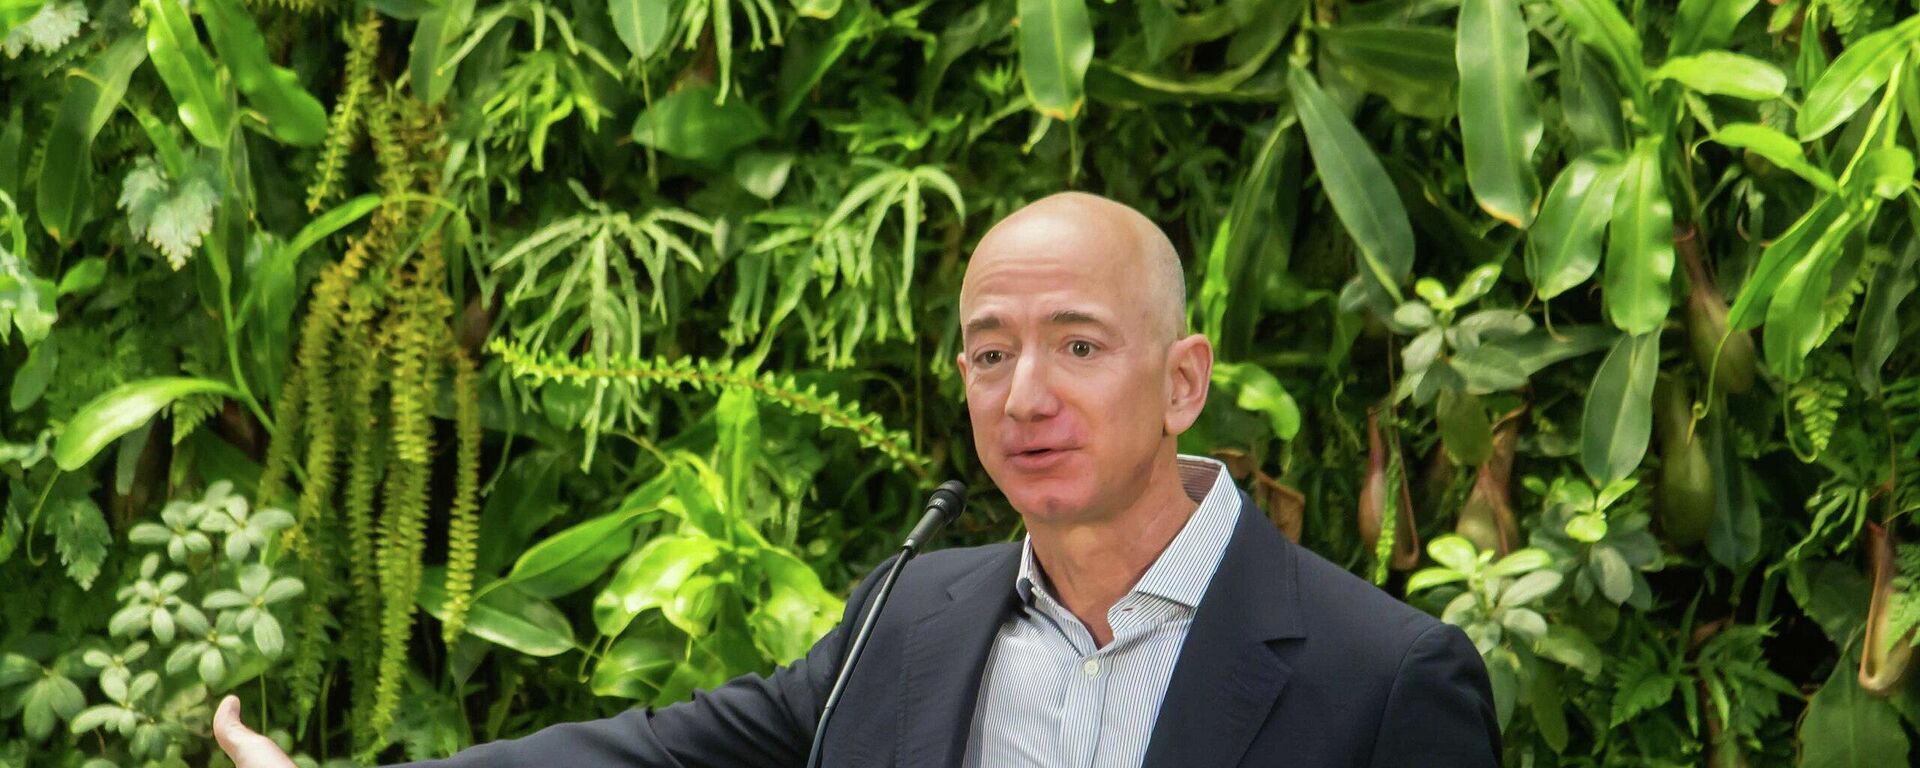 Džef Bezos, osnivač Amazona - Sputnik Srbija, 1920, 07.09.2021